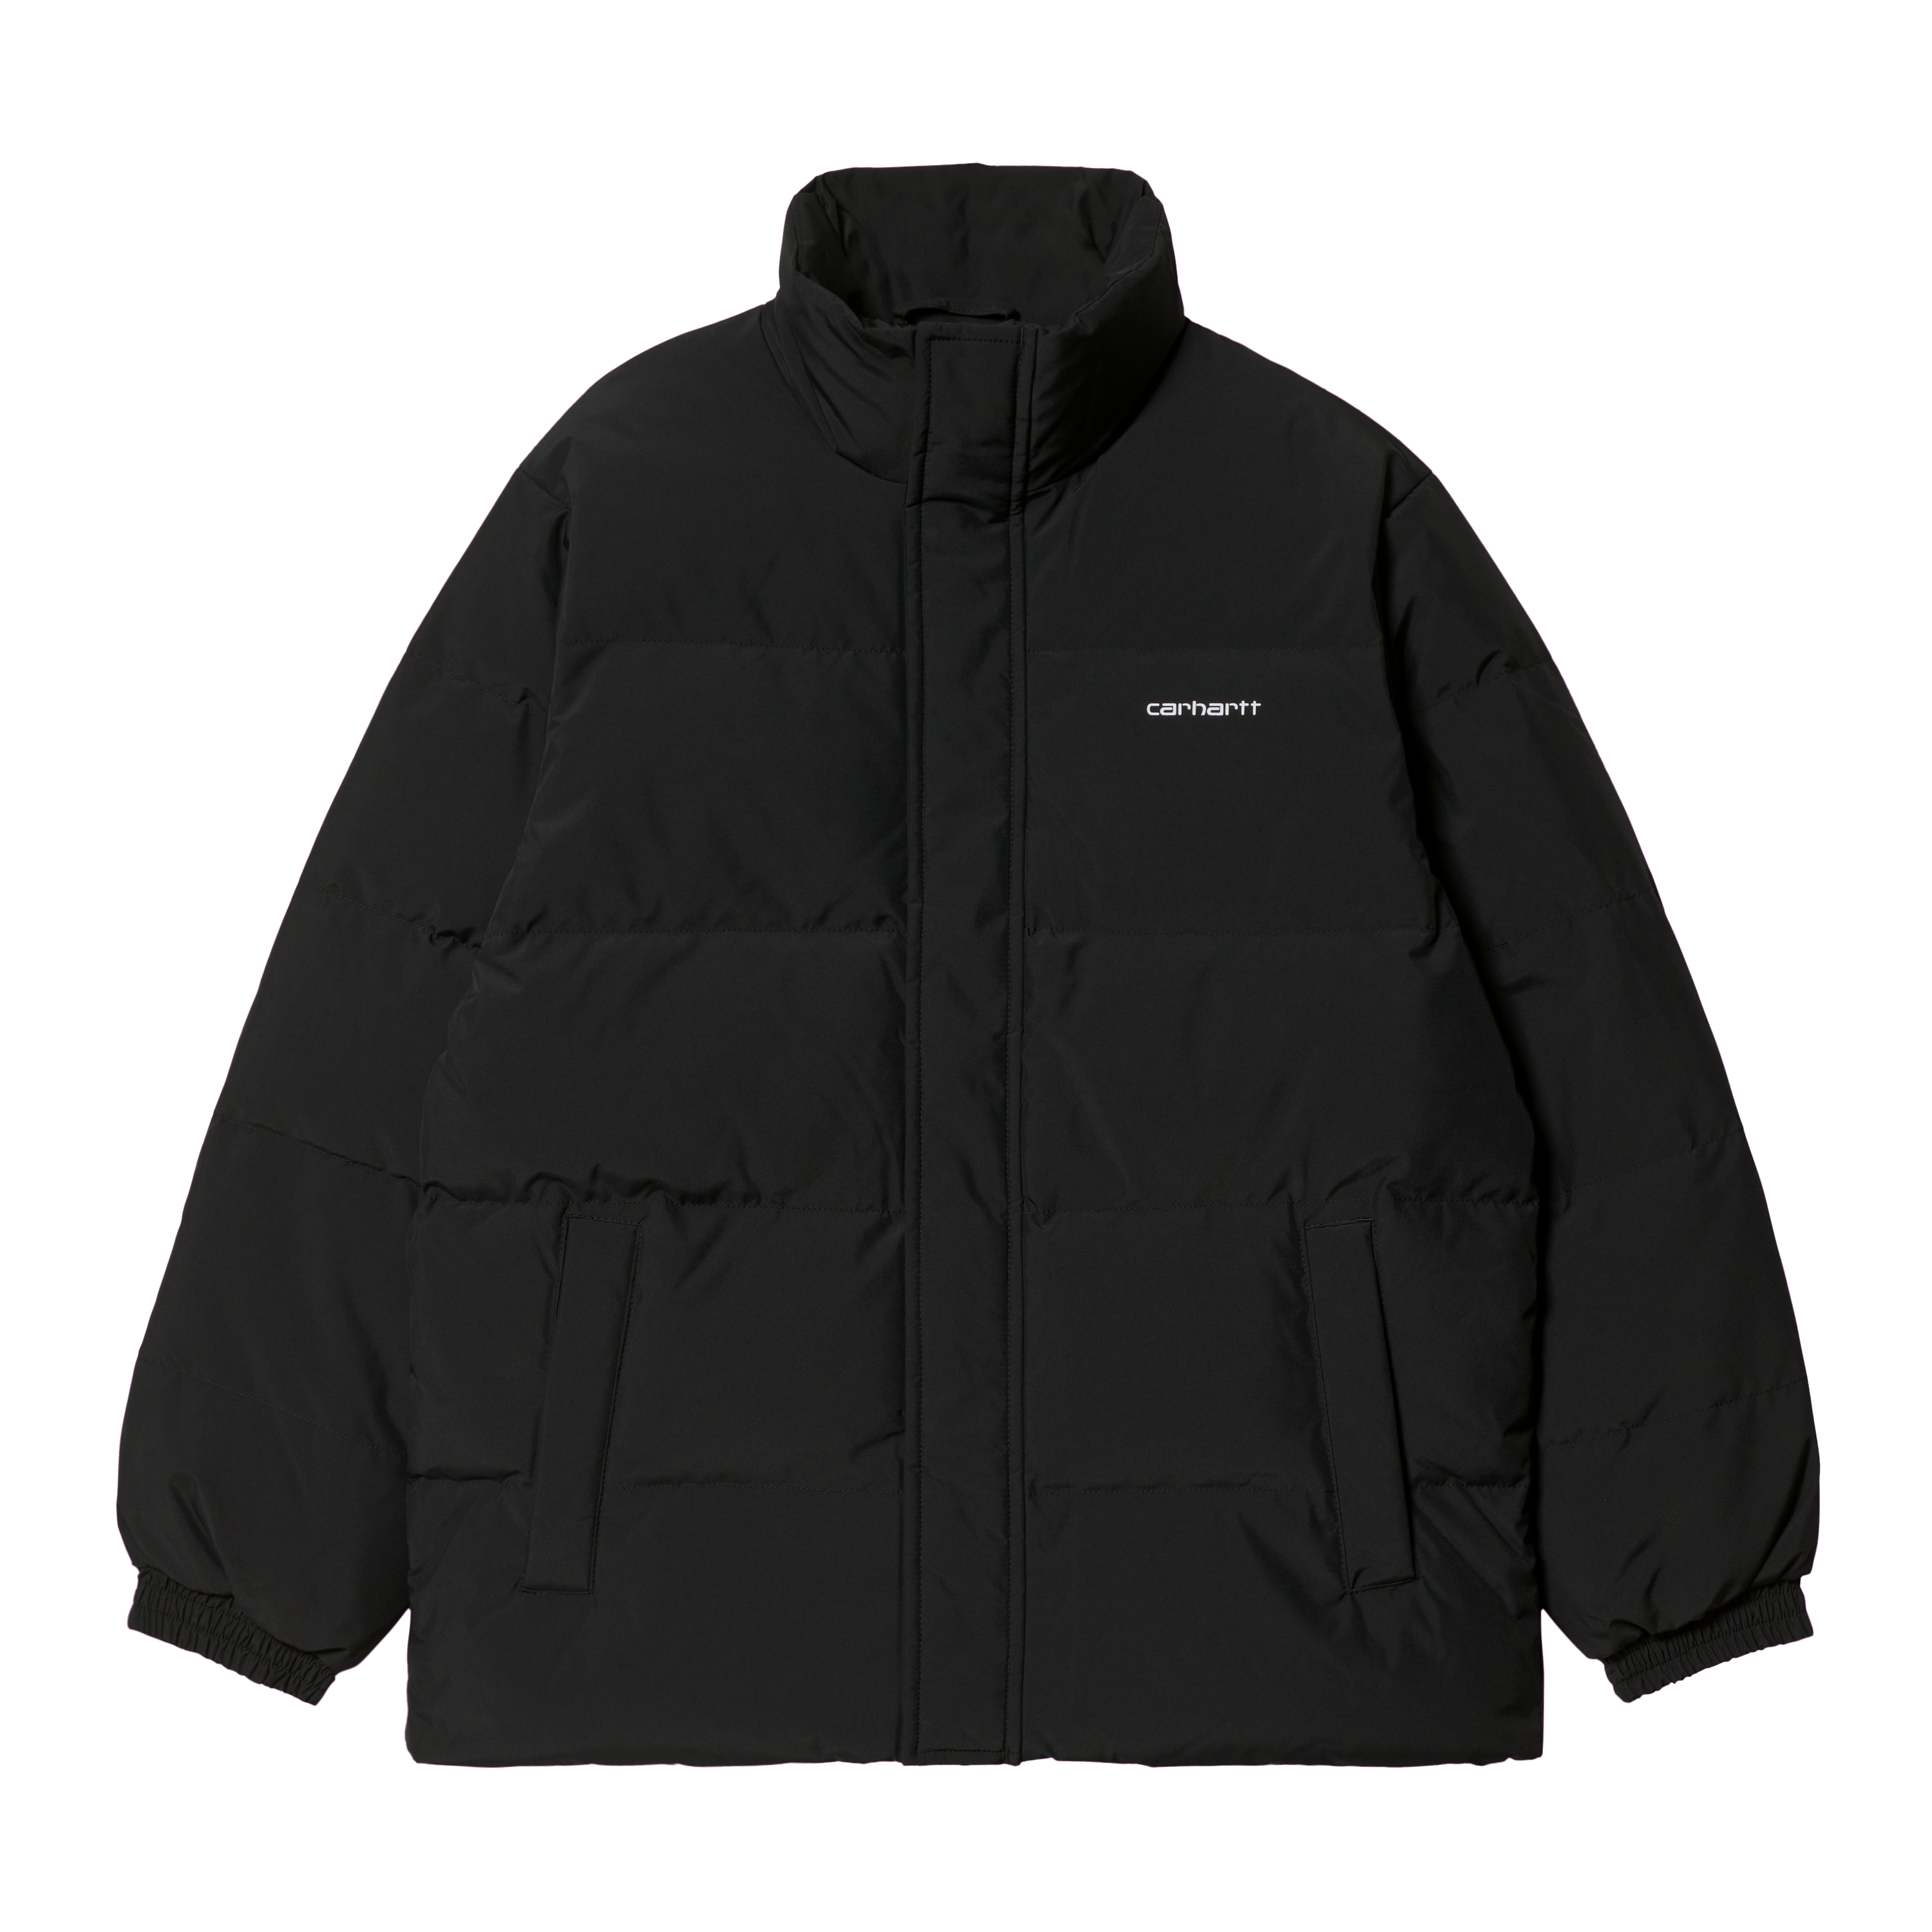 Carhartt WIP Danville Jacket in Black